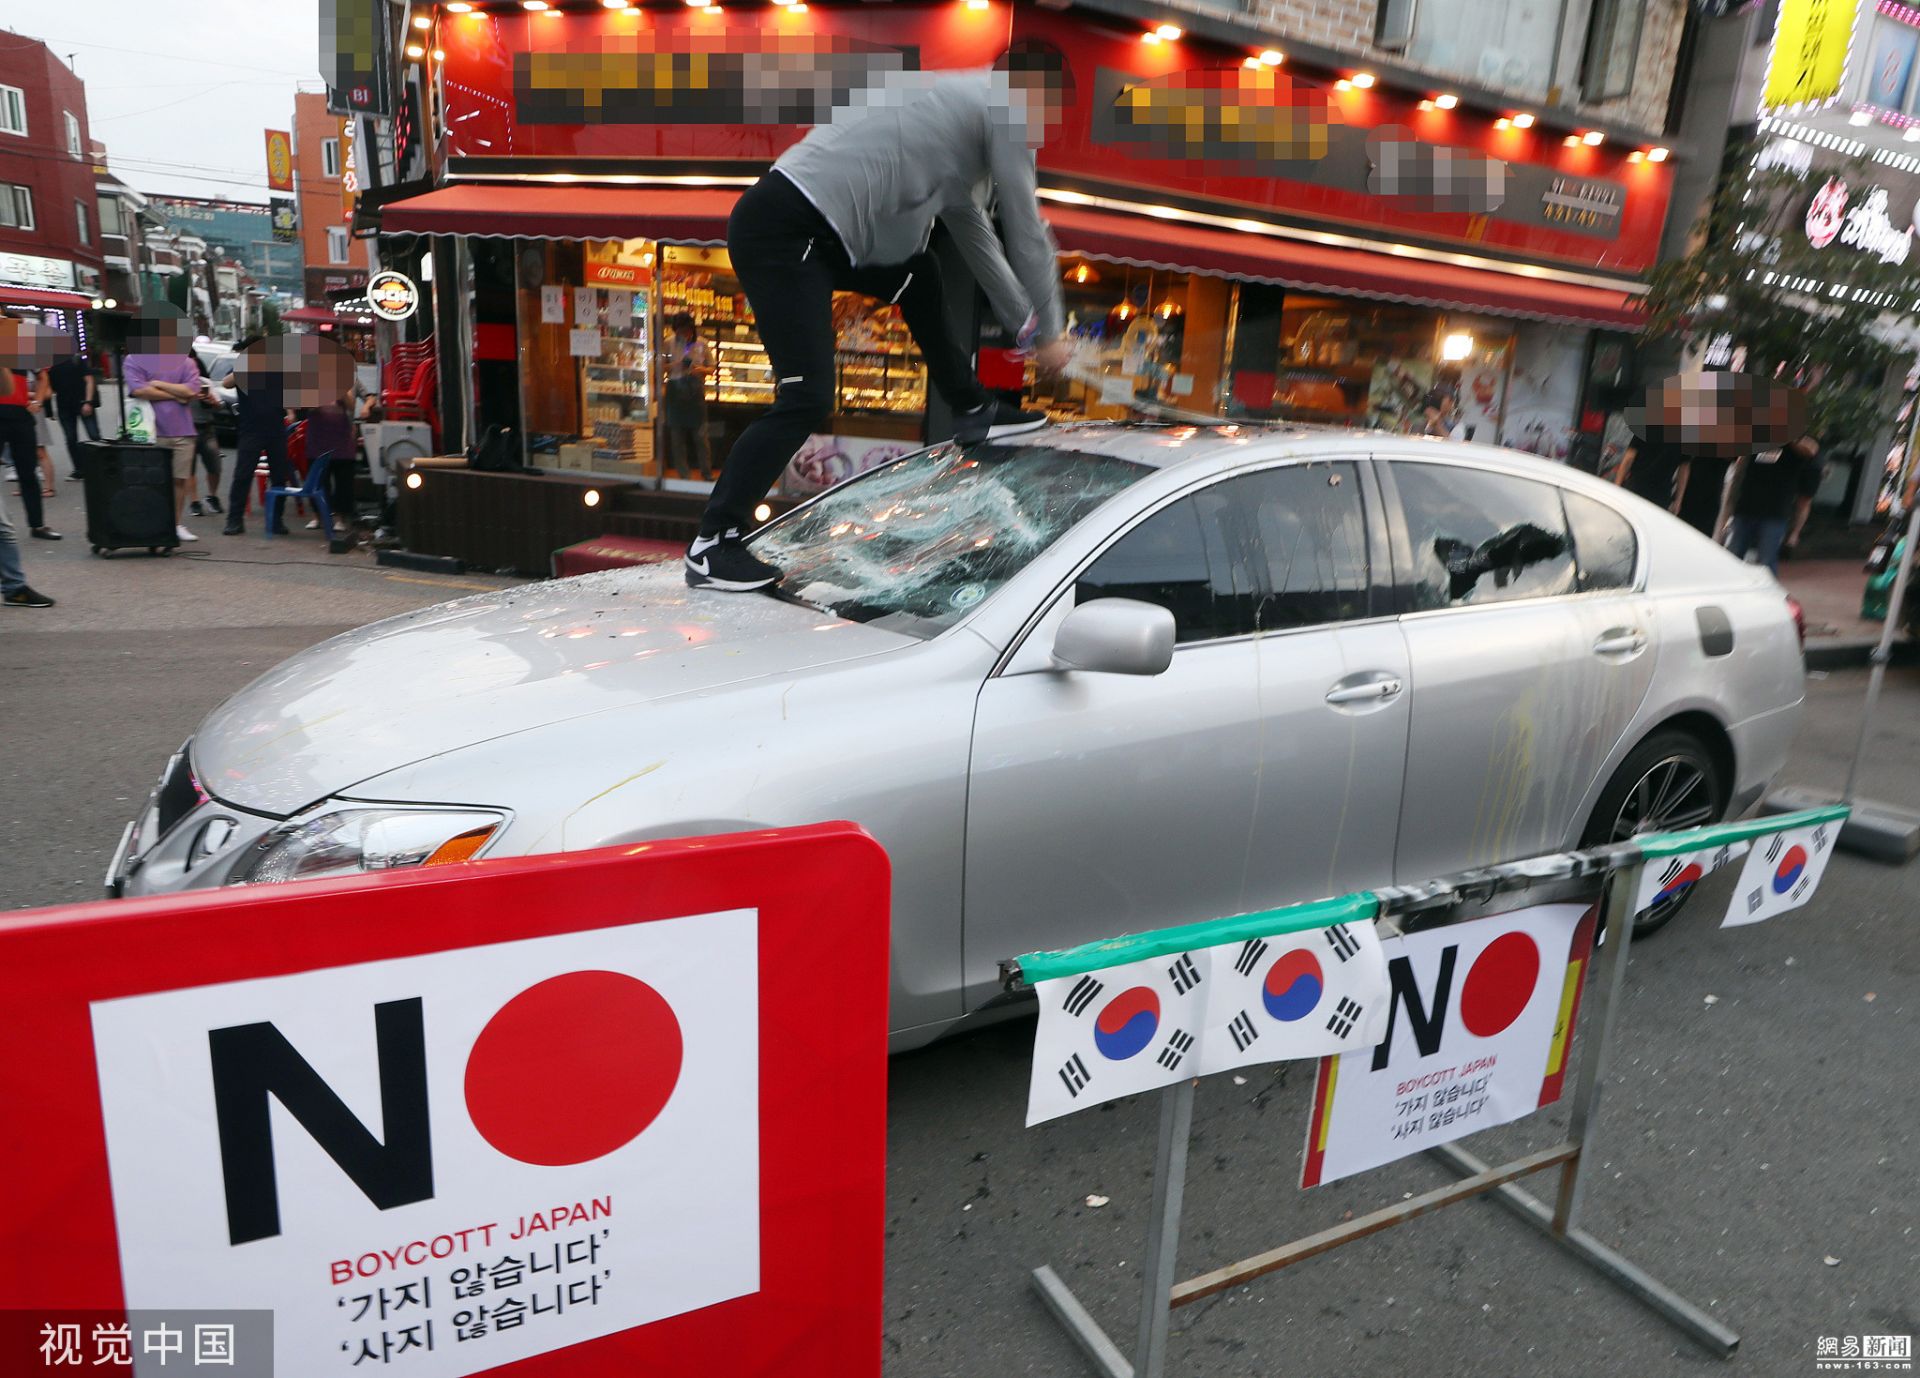 韩国民众抗议日本出口管制 怒砸日系车 - 精选轮播图 - 新湖南